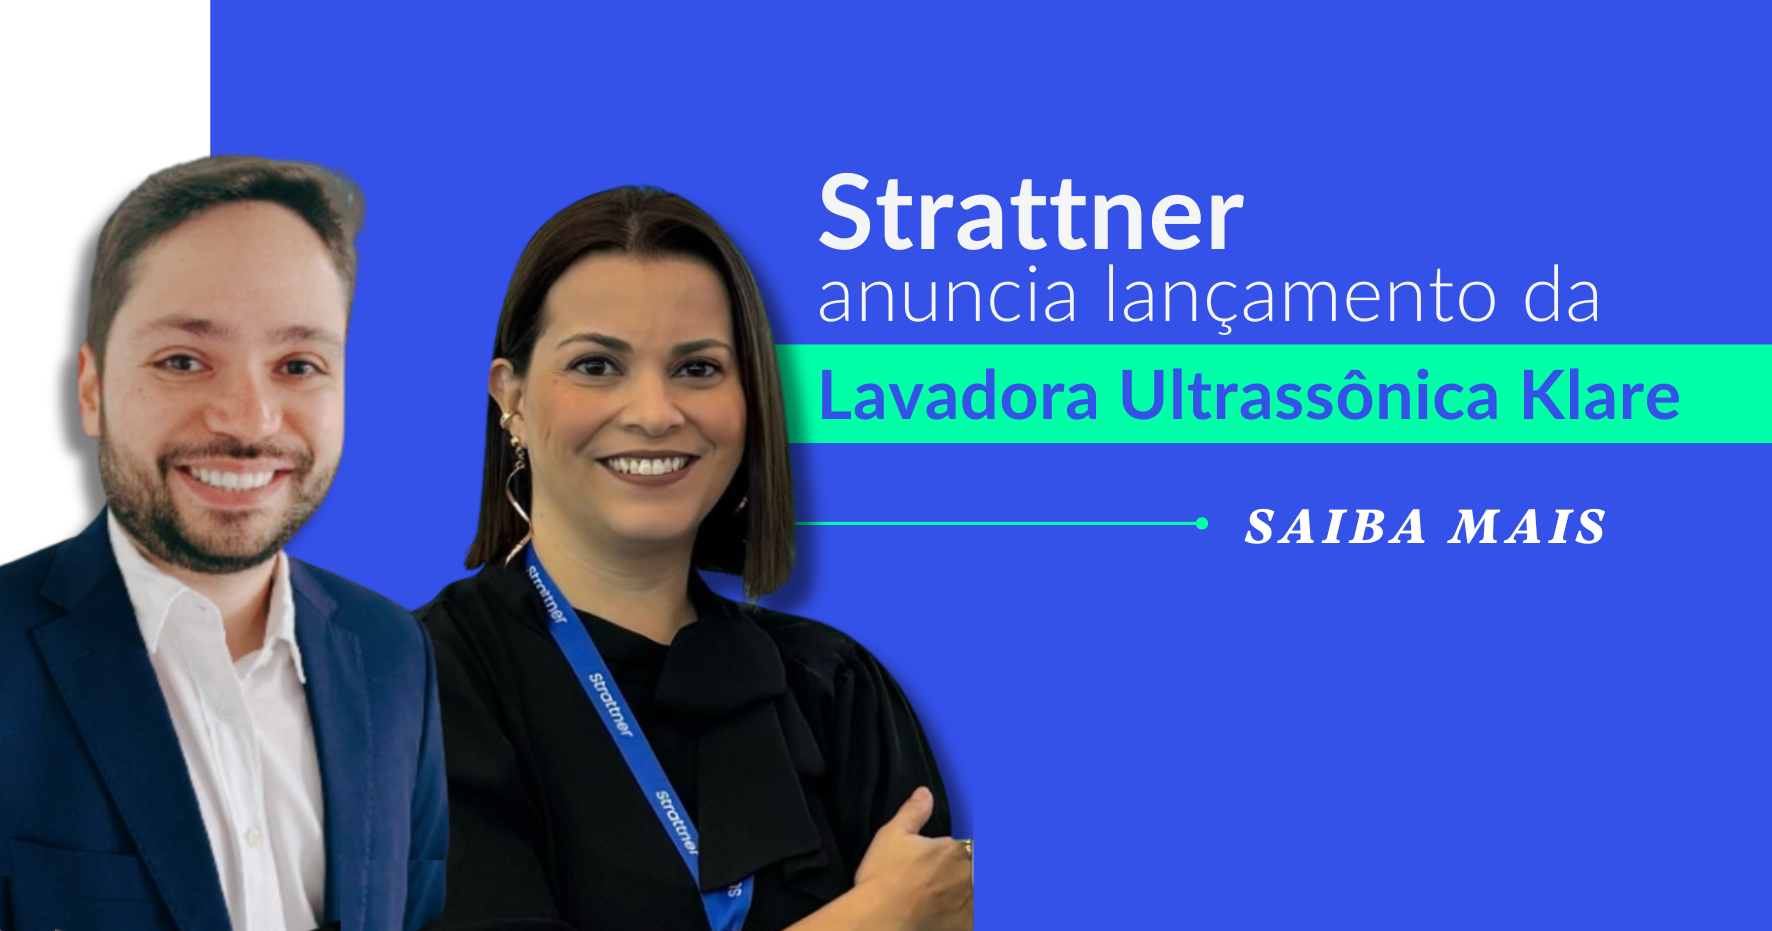 Strattner anuncia o lançamento da Lavadora Ultrassônica Klare